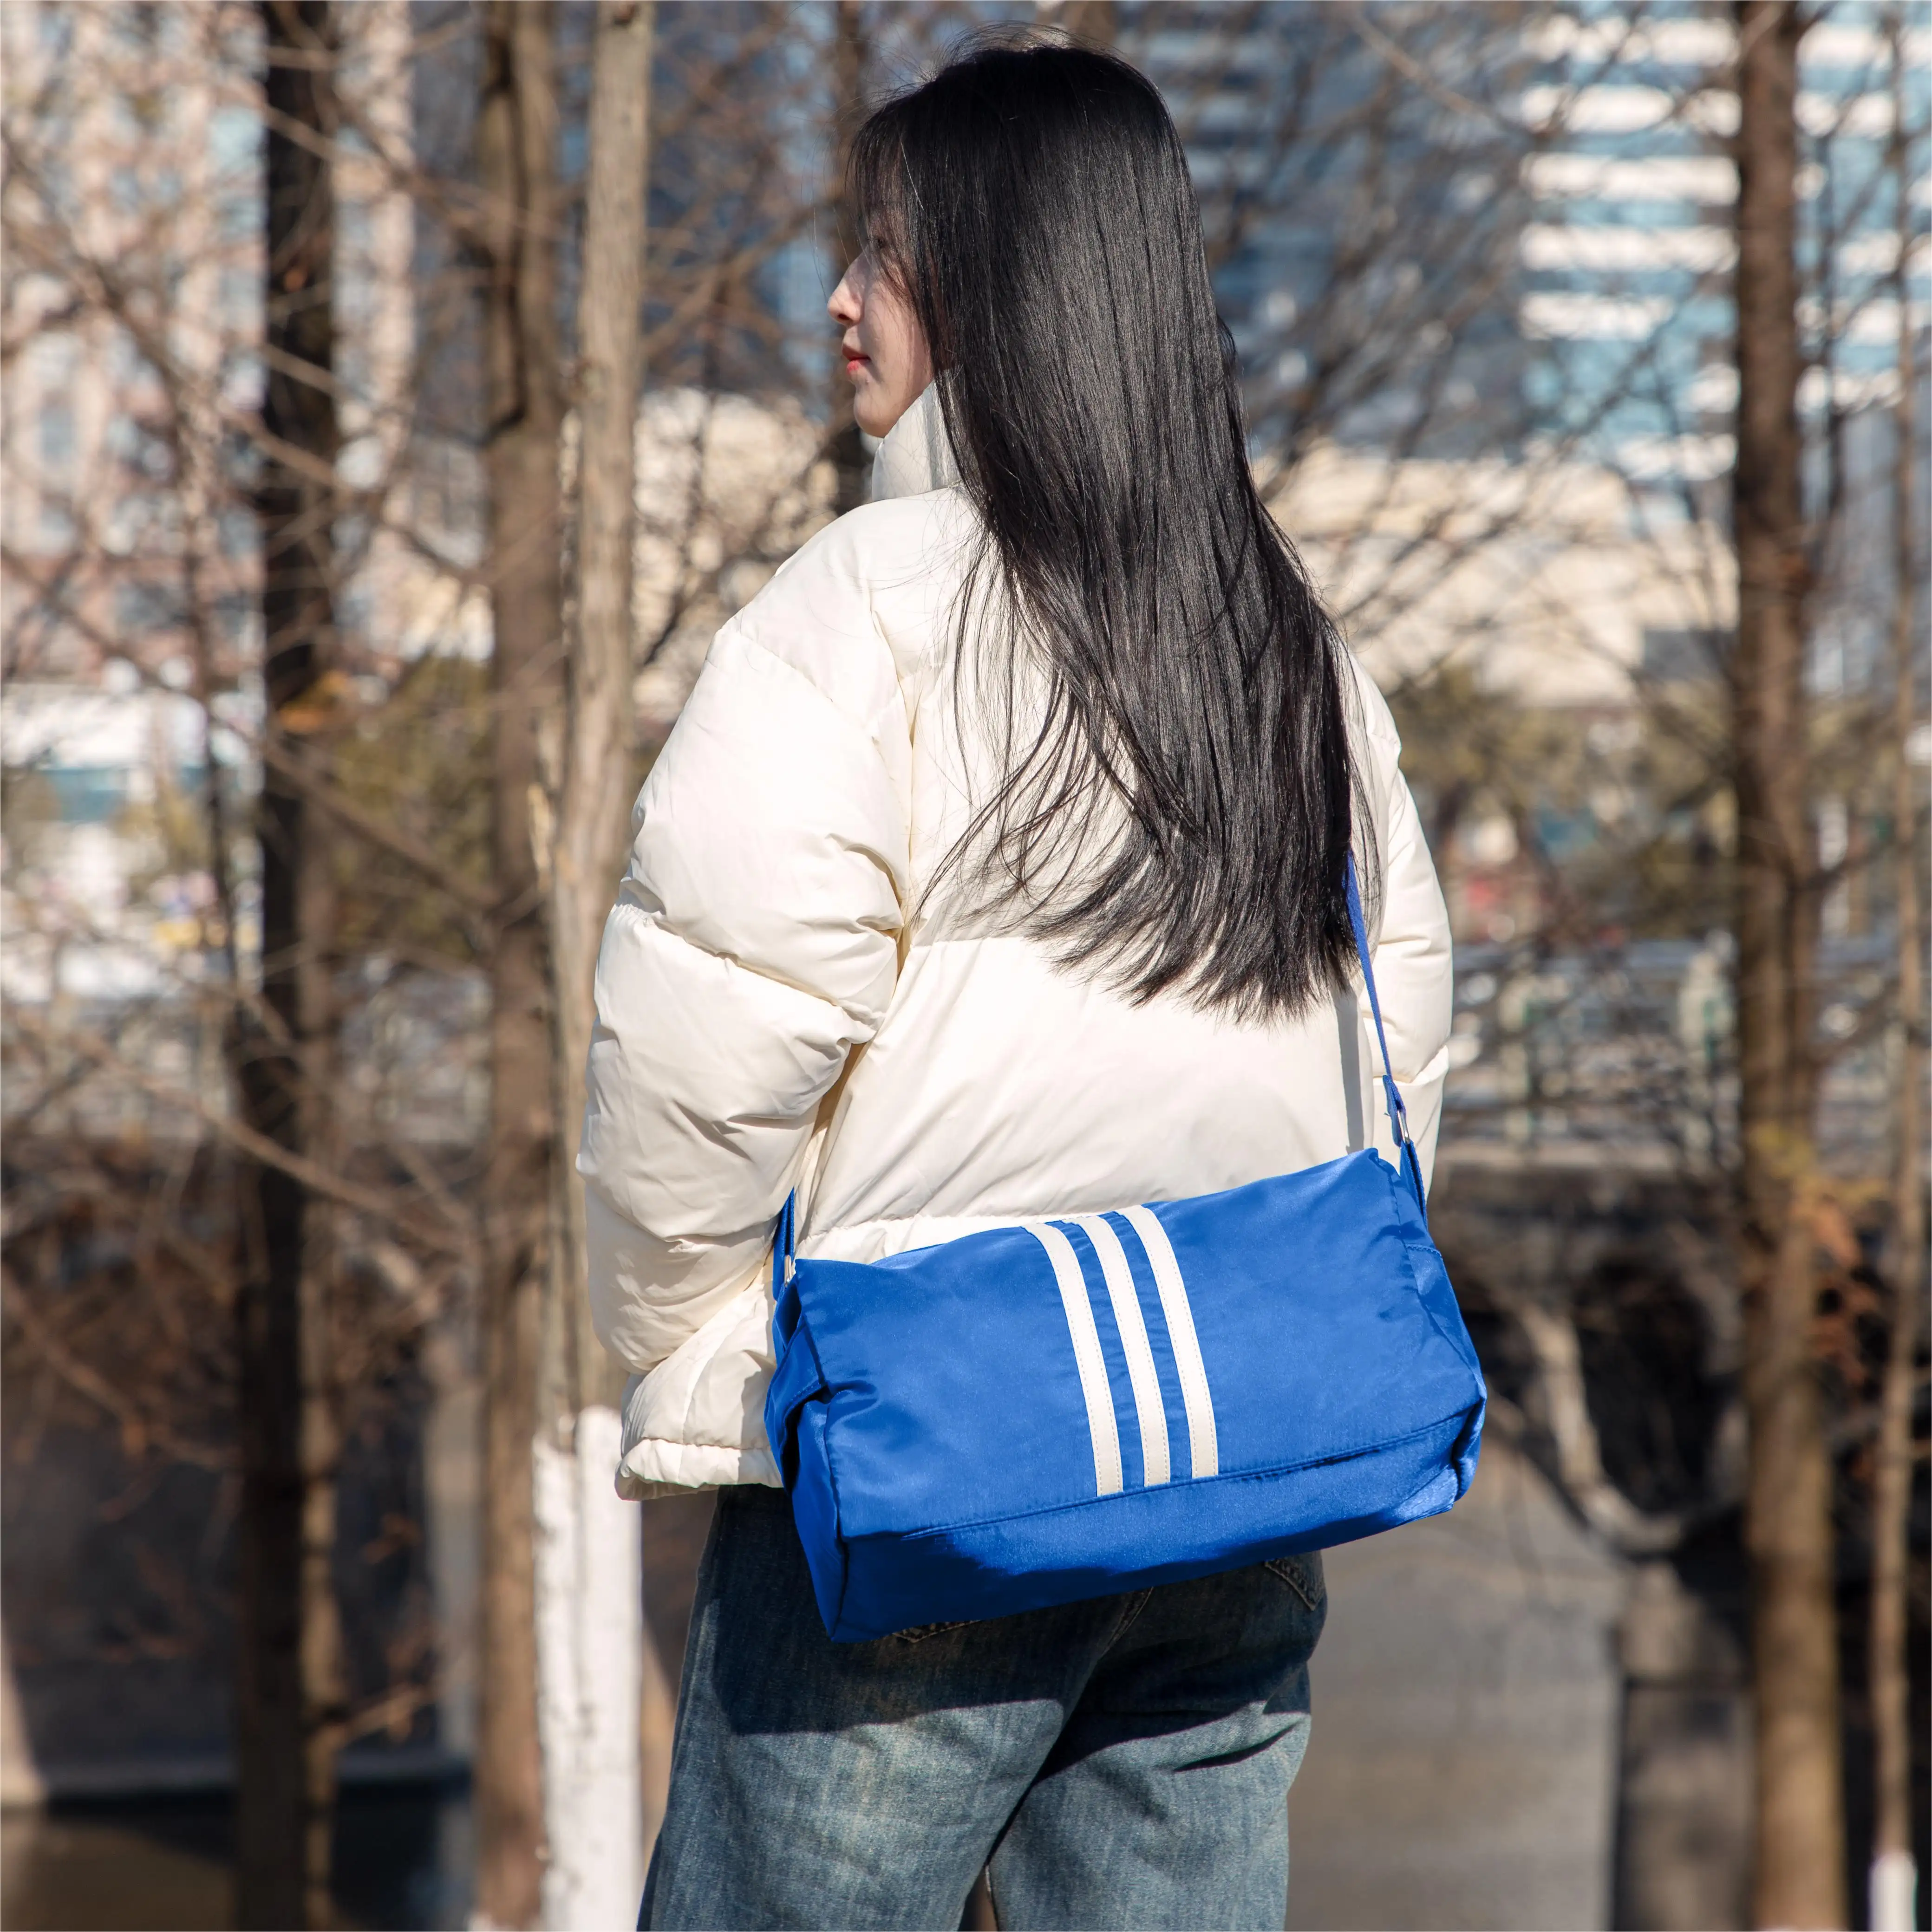 Yeni moda şerit omuzdan askili çanta su geçirmez naylon küçük kare çanta Crossbody çanta kadınlar için askılı çanta